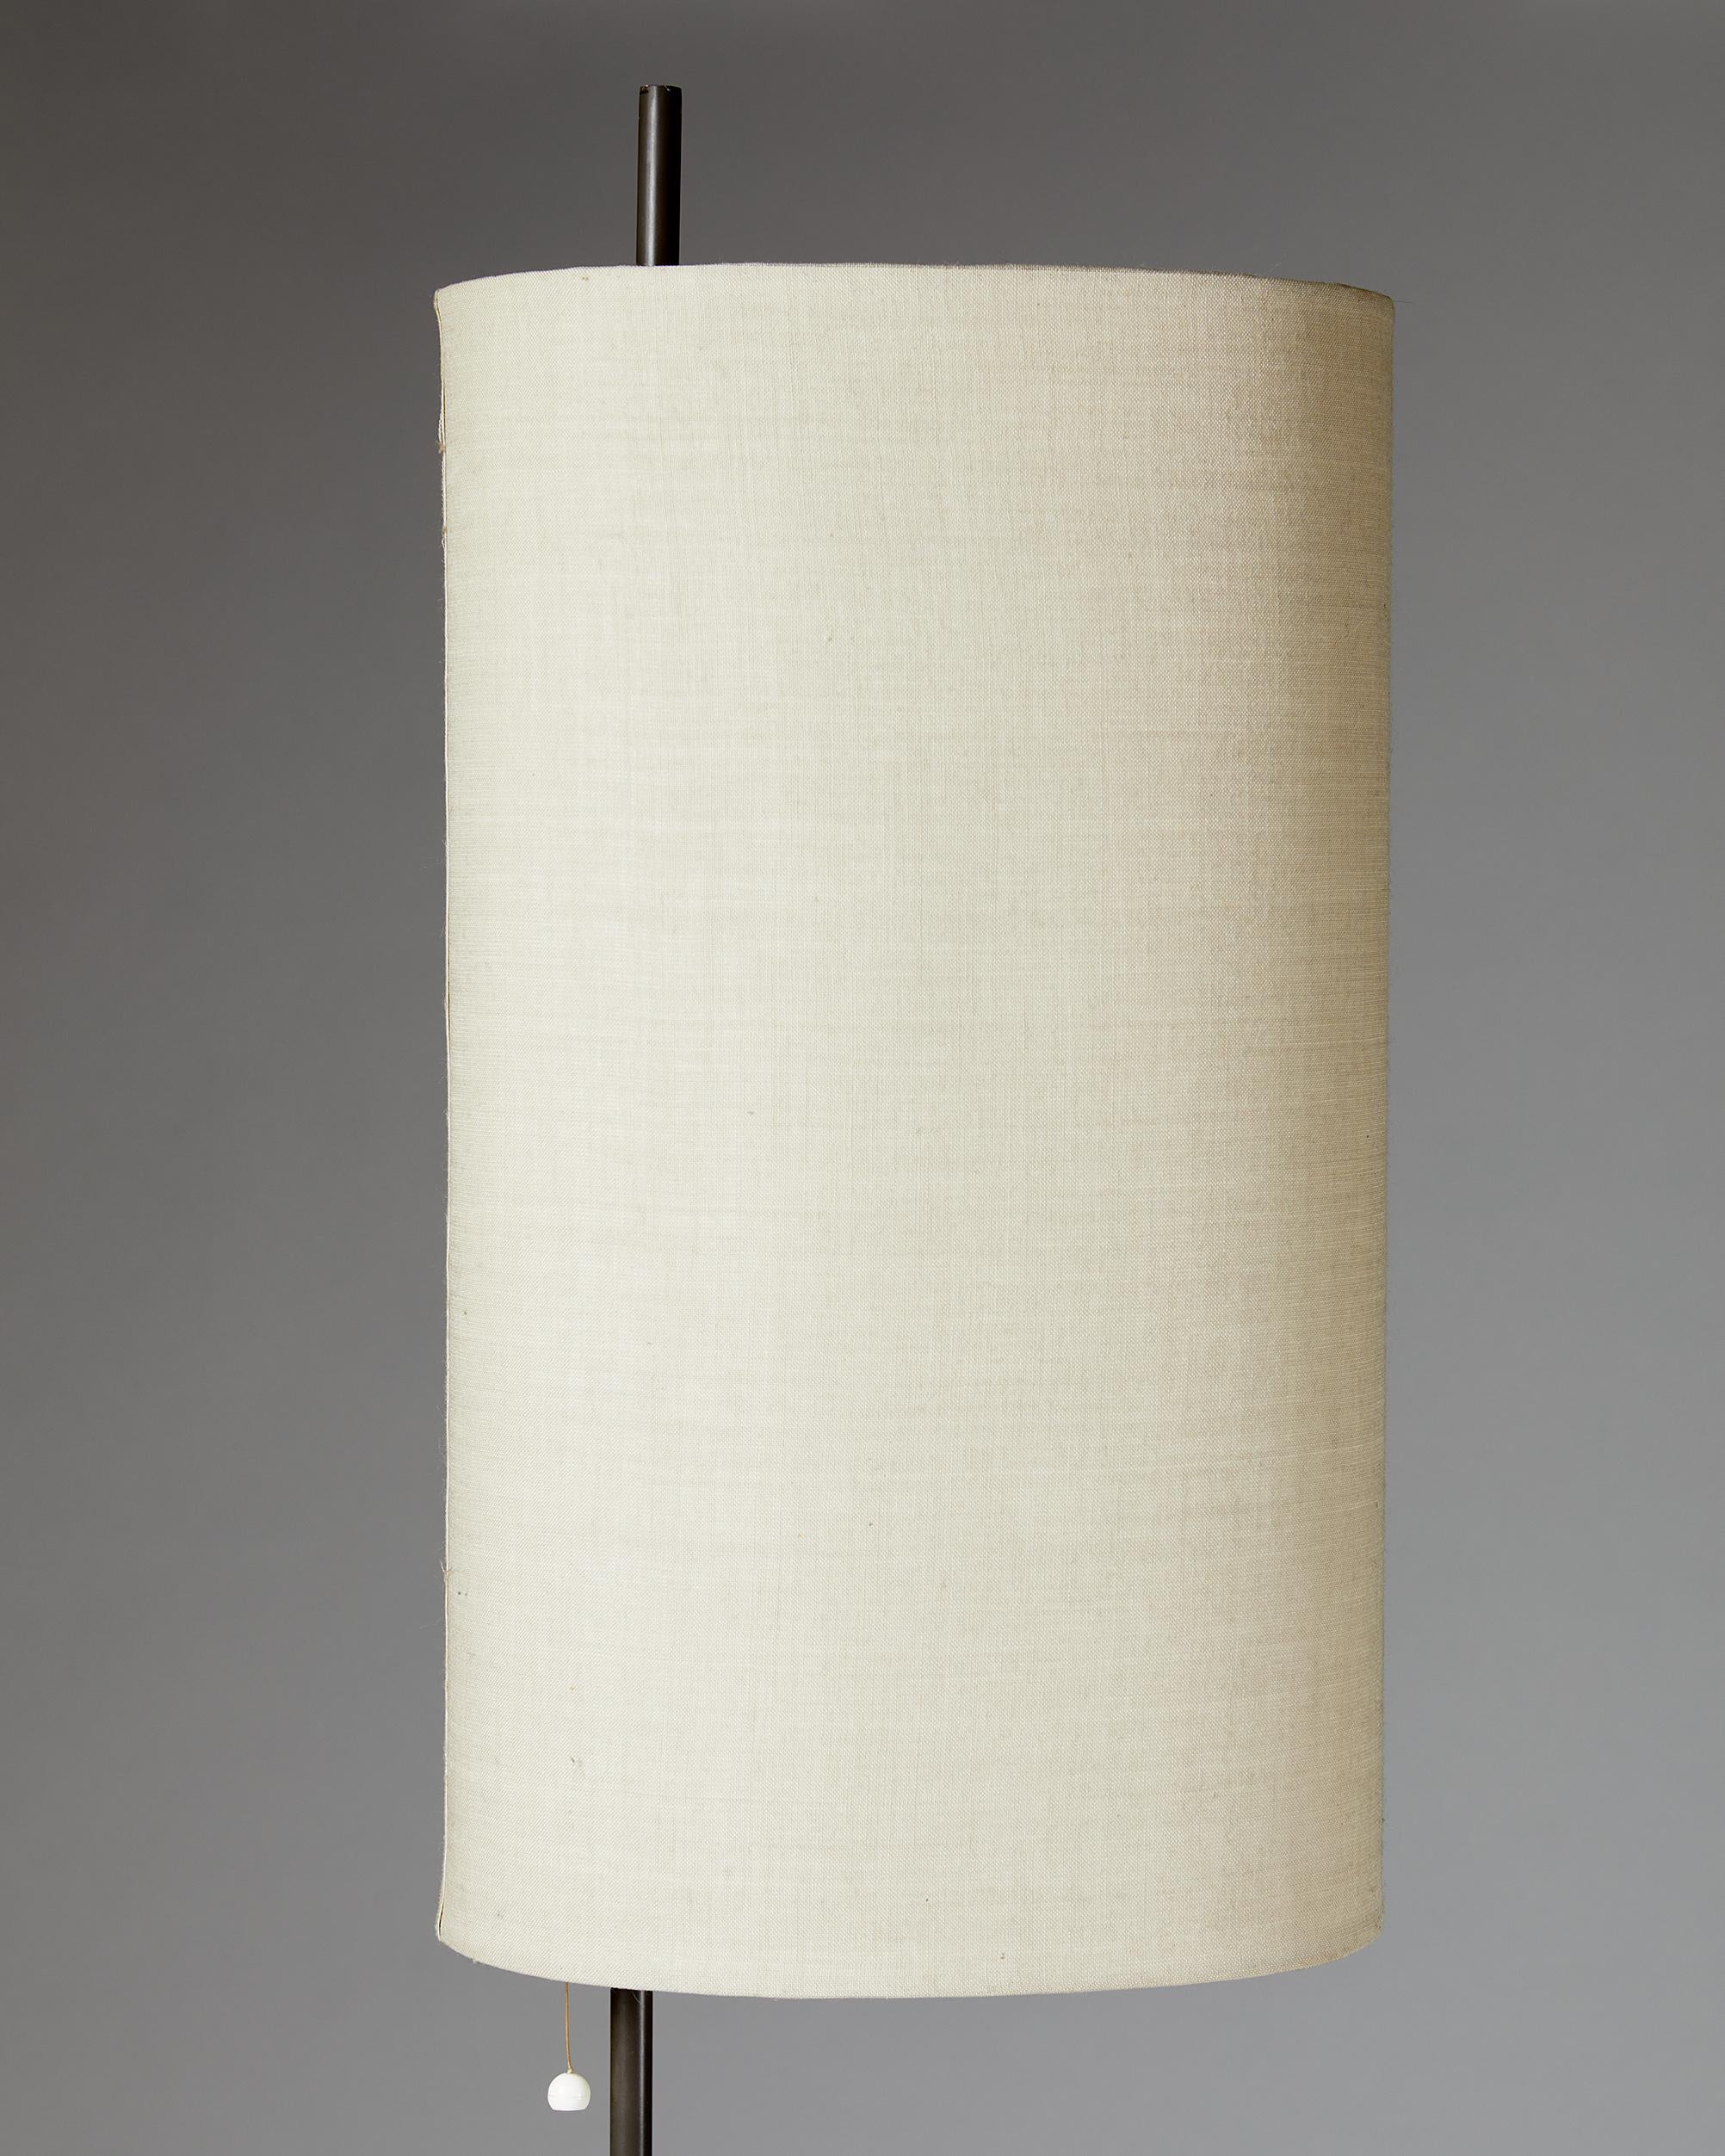 20th Century Floor Lamp Model AJ Royal, Designed by Arne Jacobsen